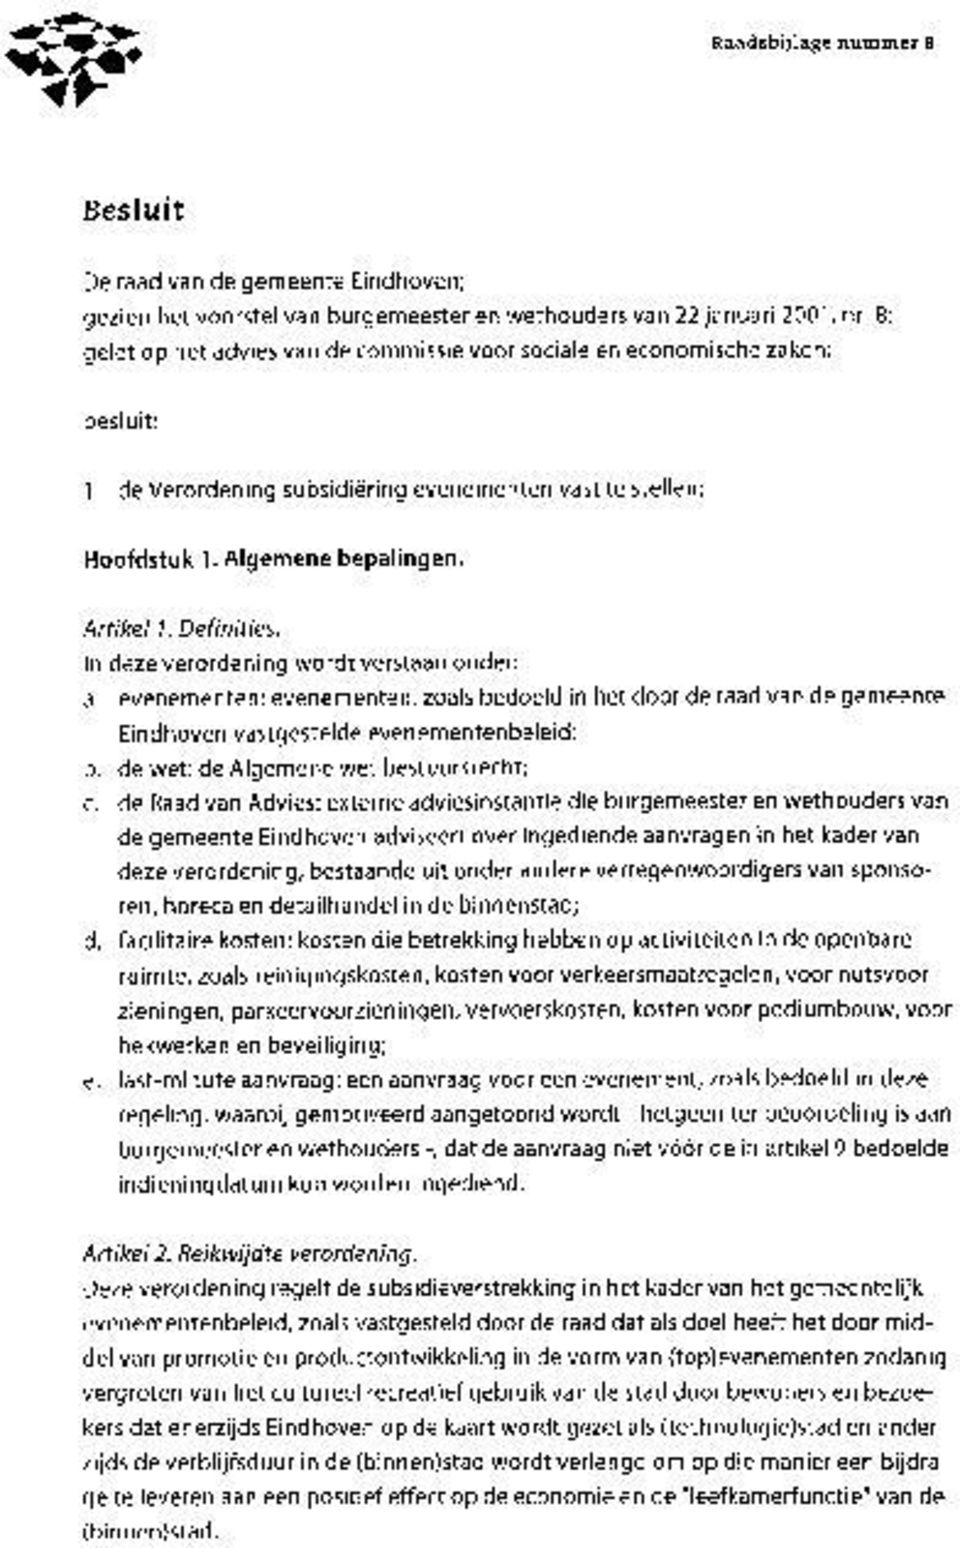 In deze verordening wordt verstaan onder; a. evenementen: evenementen, zoals bedoeld in het door de raad van de gemeente Eindhoven vastgestelde evenementenbeleid; b.